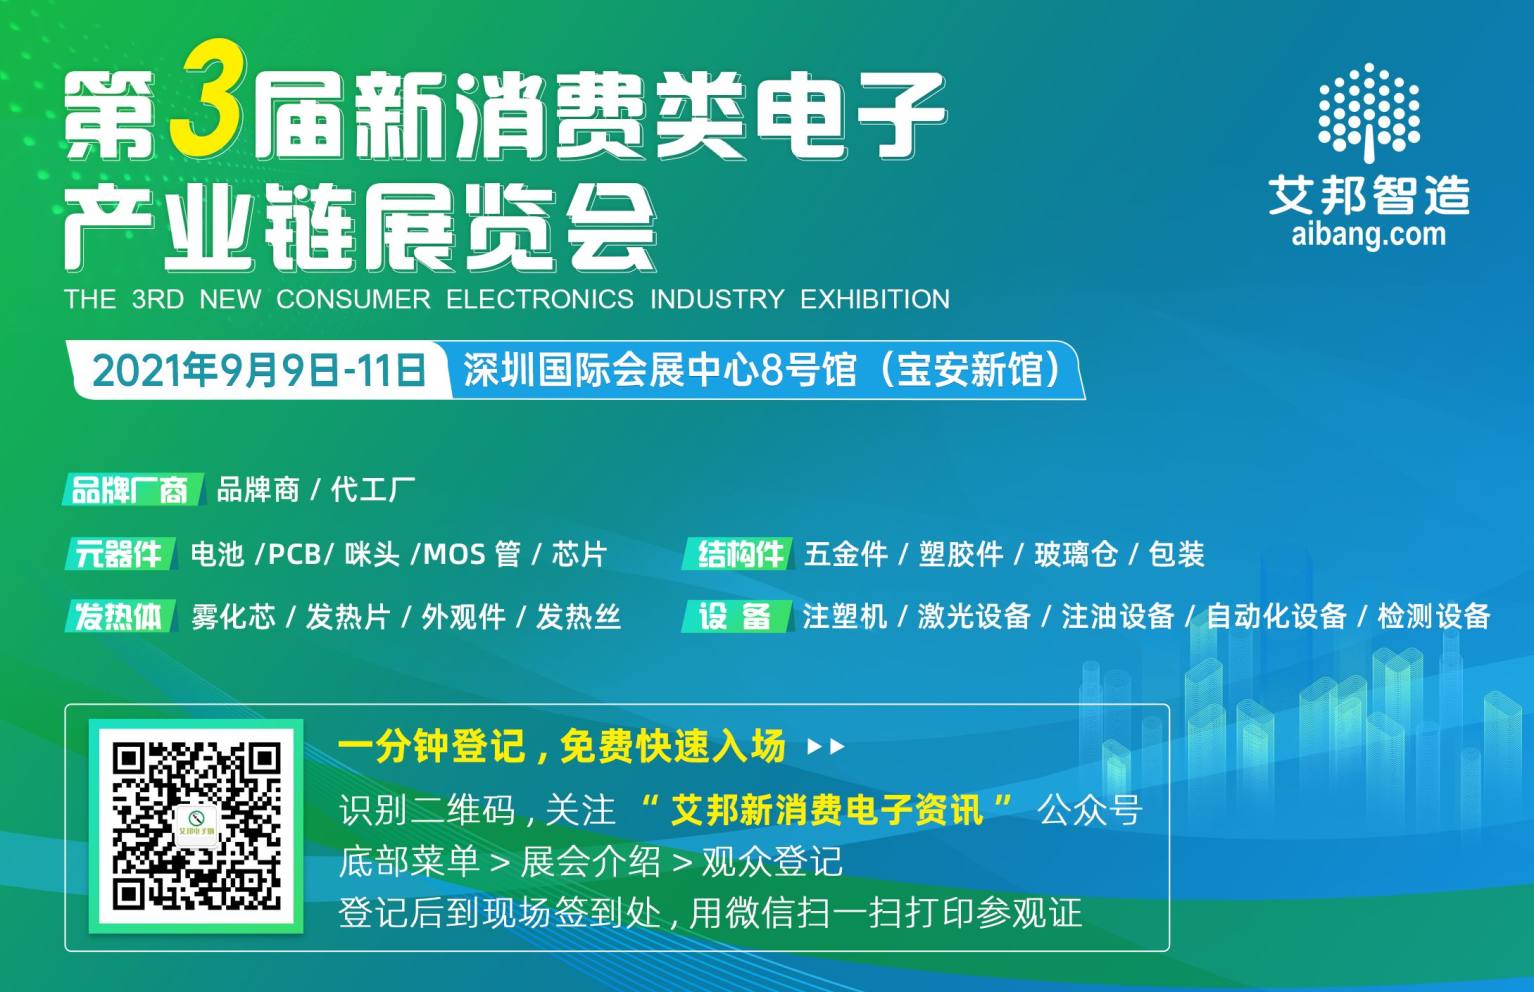 東莞飛弘儀器設備有限公司誠邀您參觀2021第三屆新消費類電子產業鏈展覽會（9月9~11日·深圳）